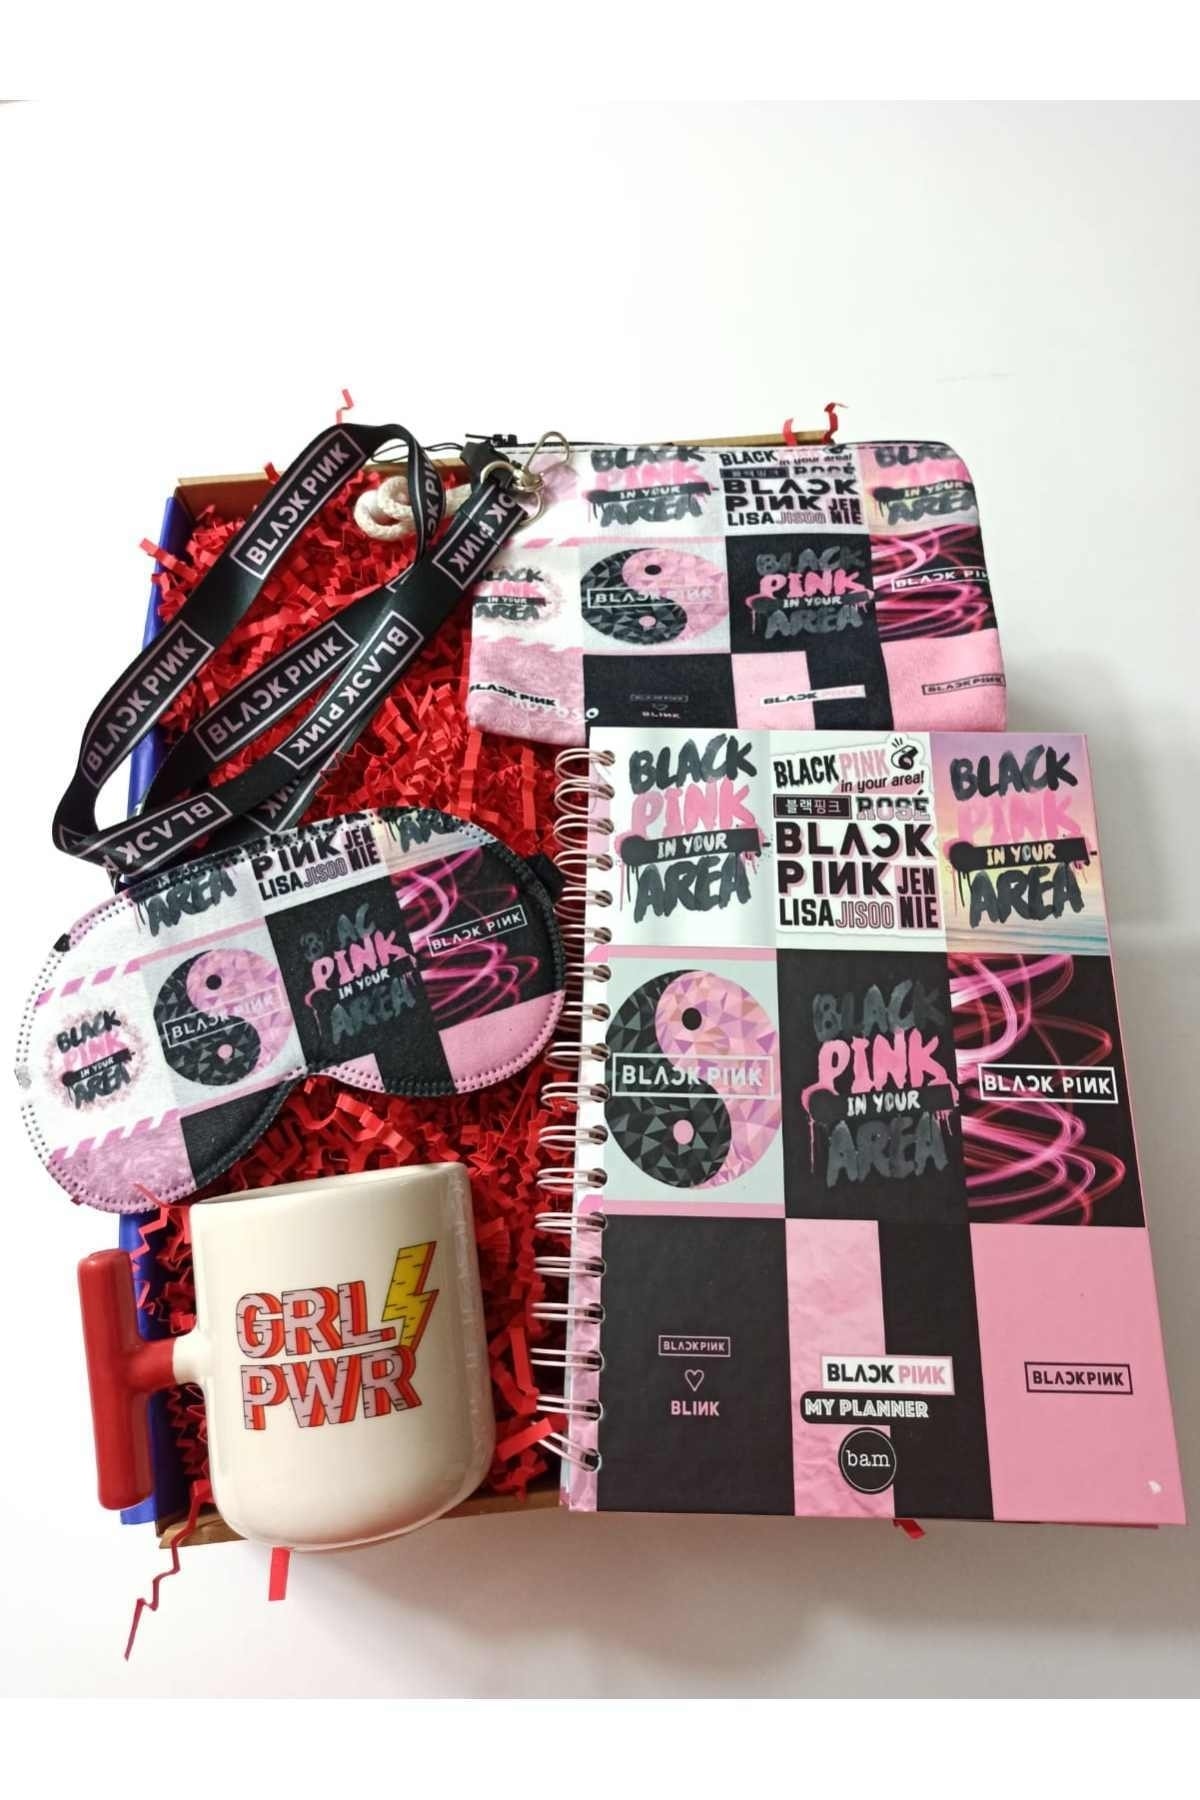 Alanç Gift Black Pink Özel Hediye Seti Konuşan Ajanda, Grl Pwr El Yapımı Kupa, Bez Cüzdan, Boyun Ipi, Göz Bandı